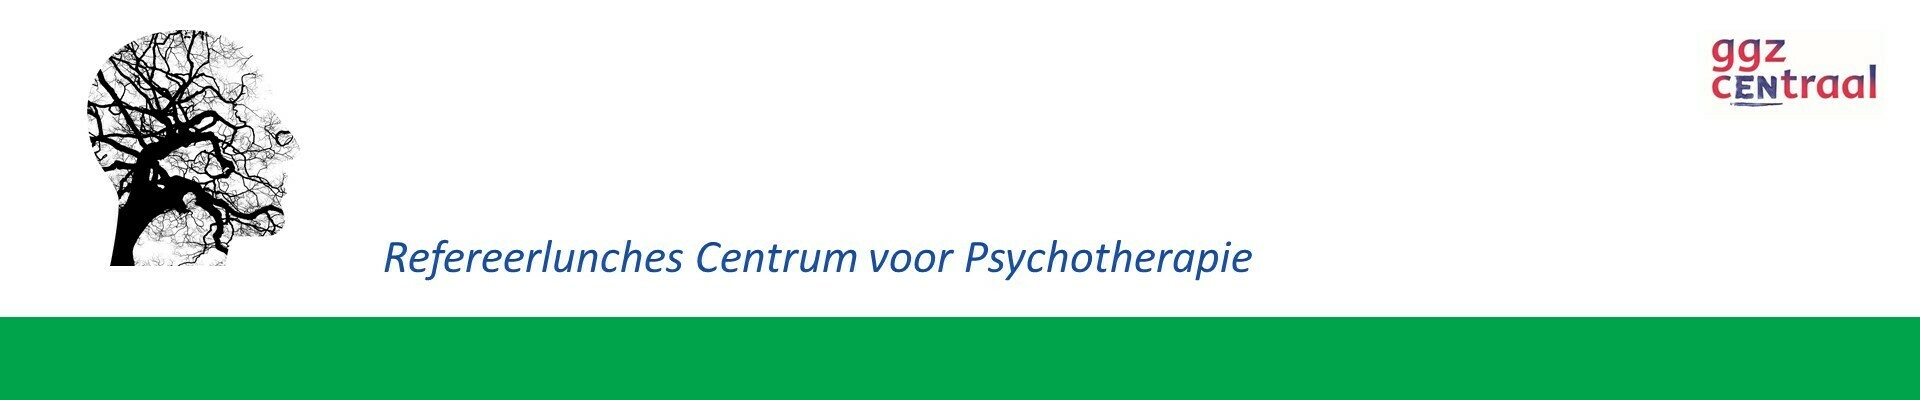 Refereerlunch Centrum voor Psychotherapie 7 juli 